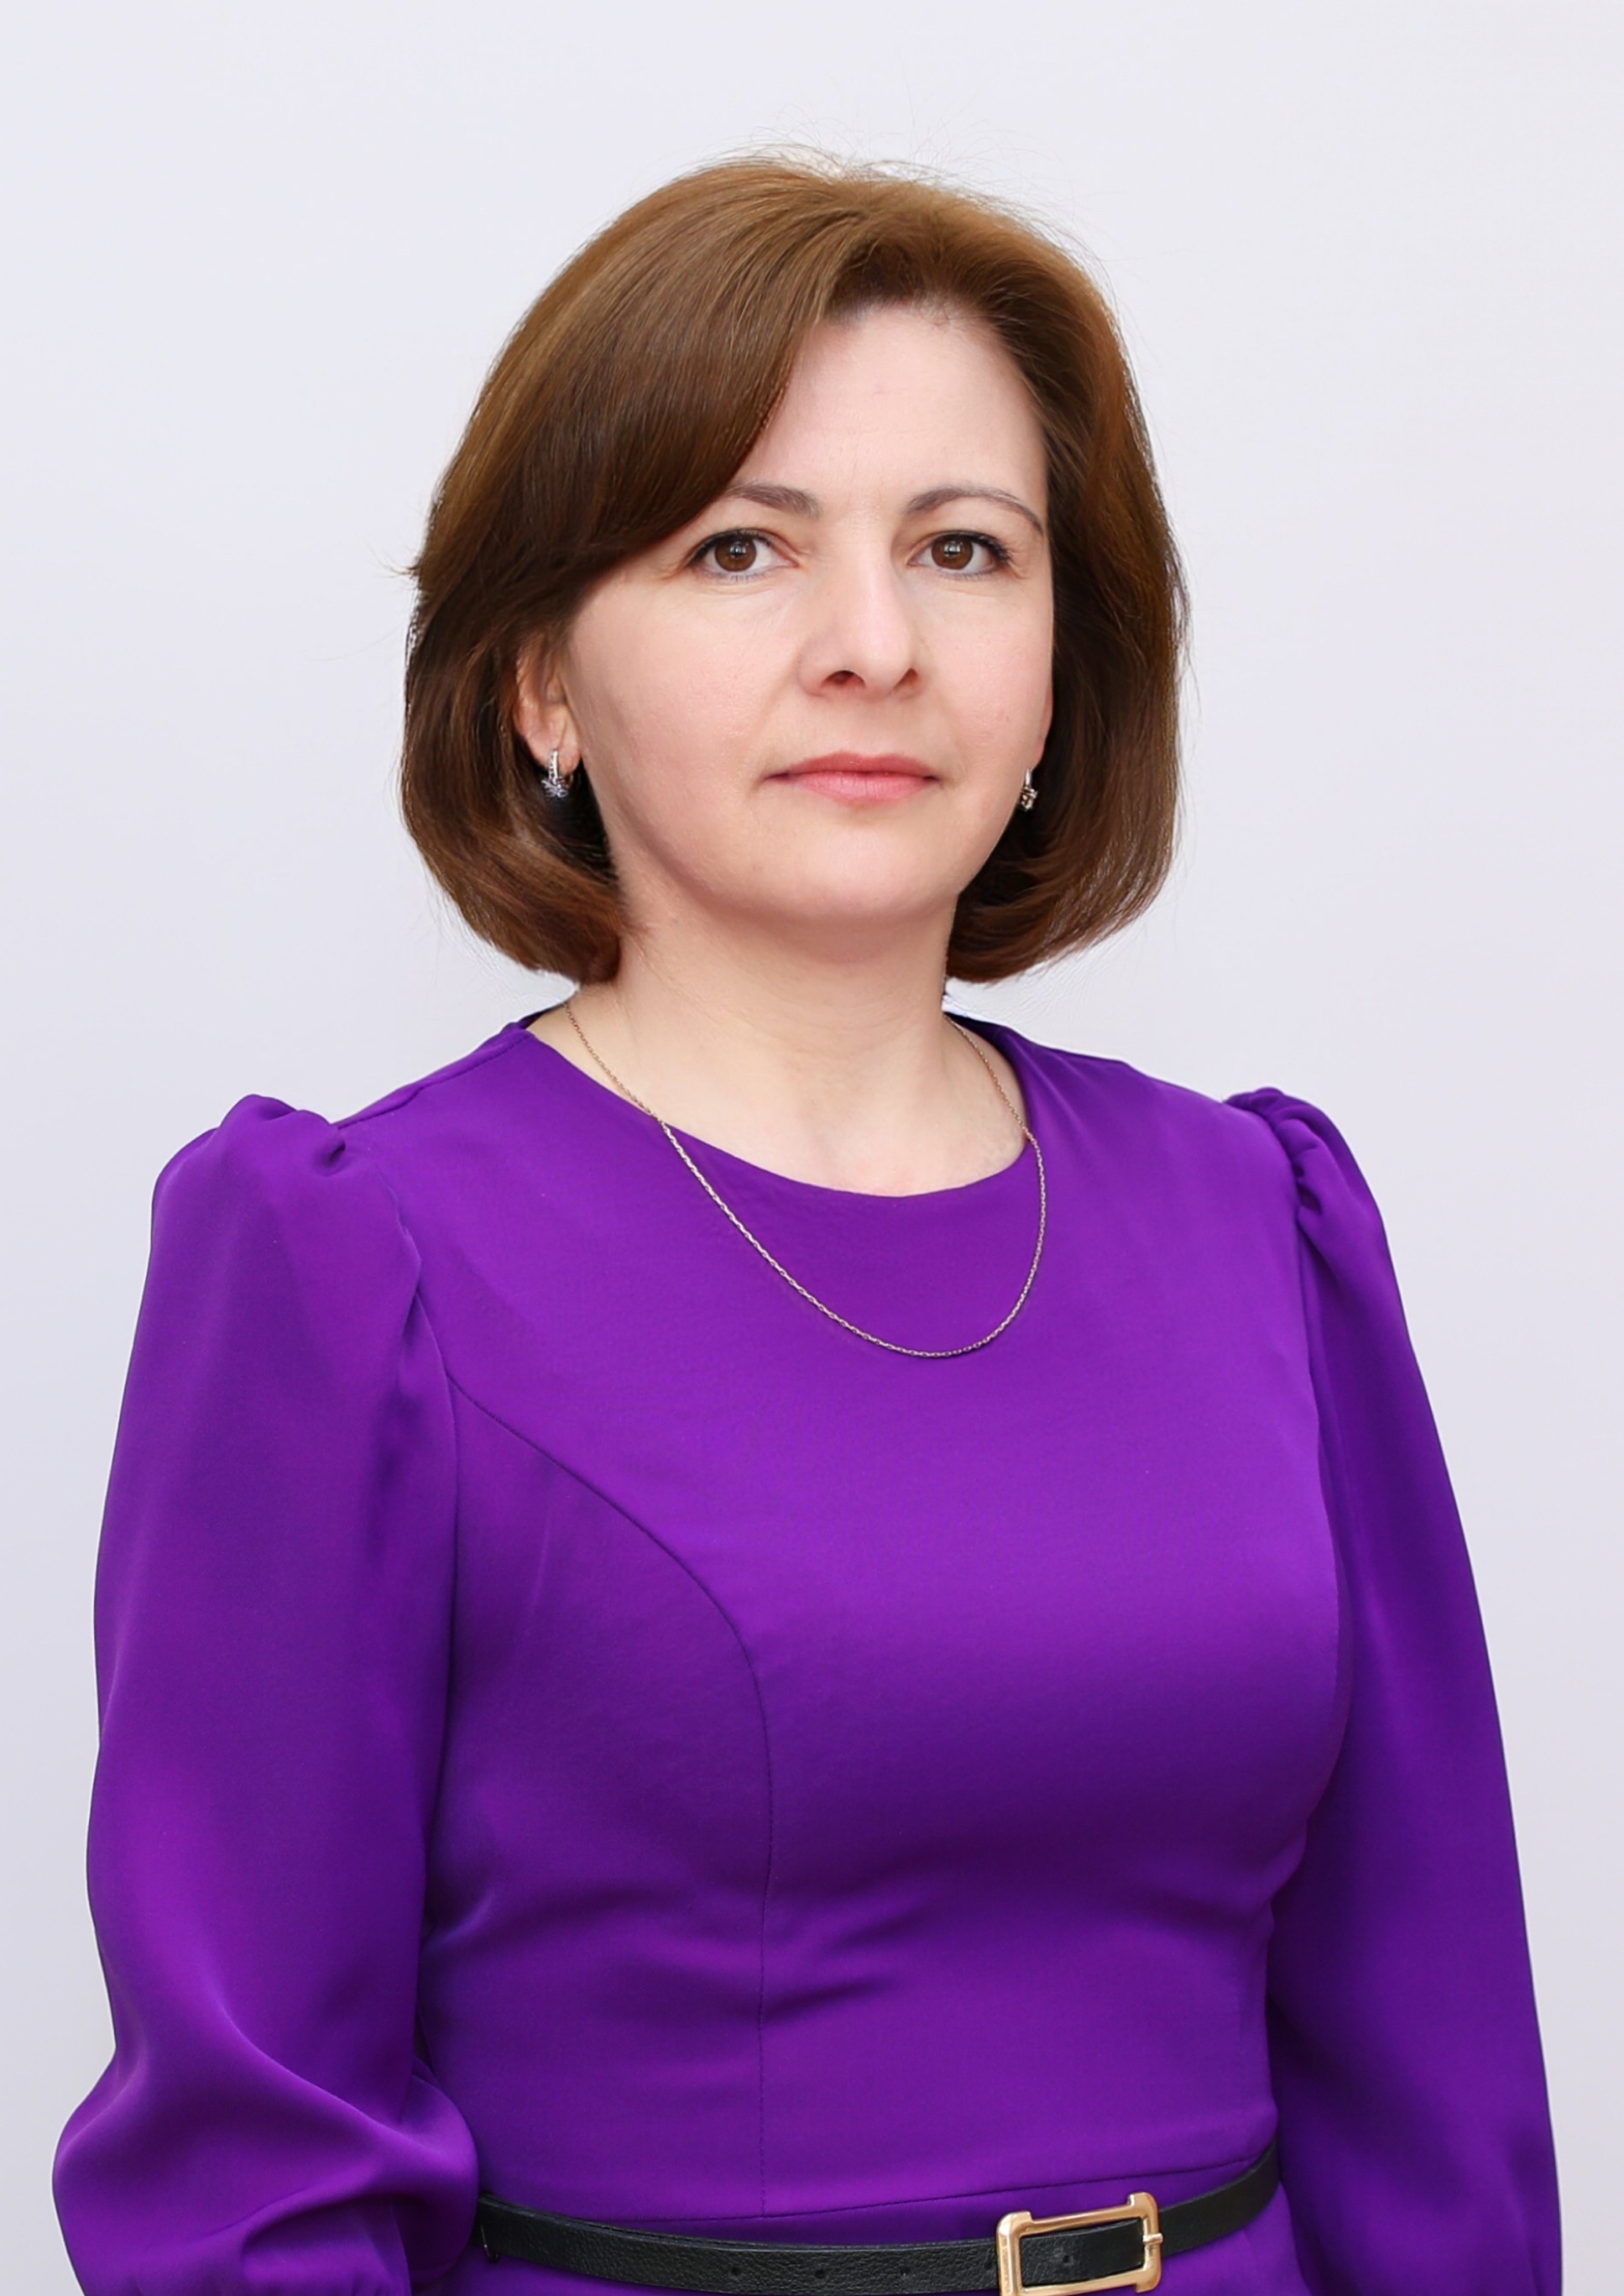 Акбаева Мадина Хасанбиевна.